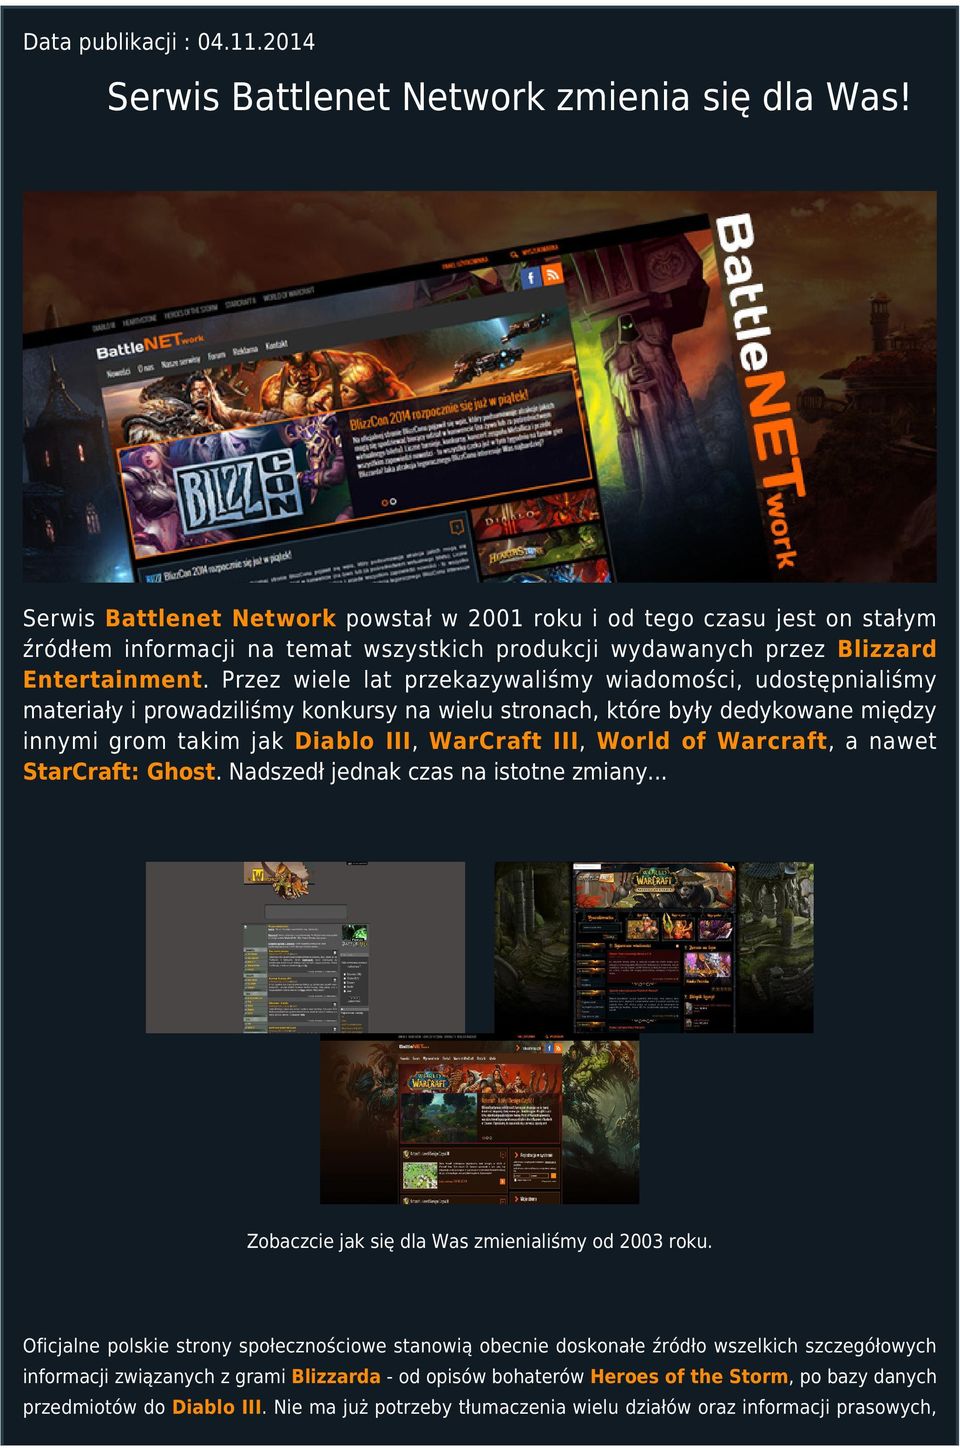 Przez wiele lat przekazywaliśmy wiadomości, udostępnialiśmy materiały i prowadziliśmy konkursy na wielu stronach, które były dedykowane między innymi grom takim jak Diablo III, WarCraft III, World of